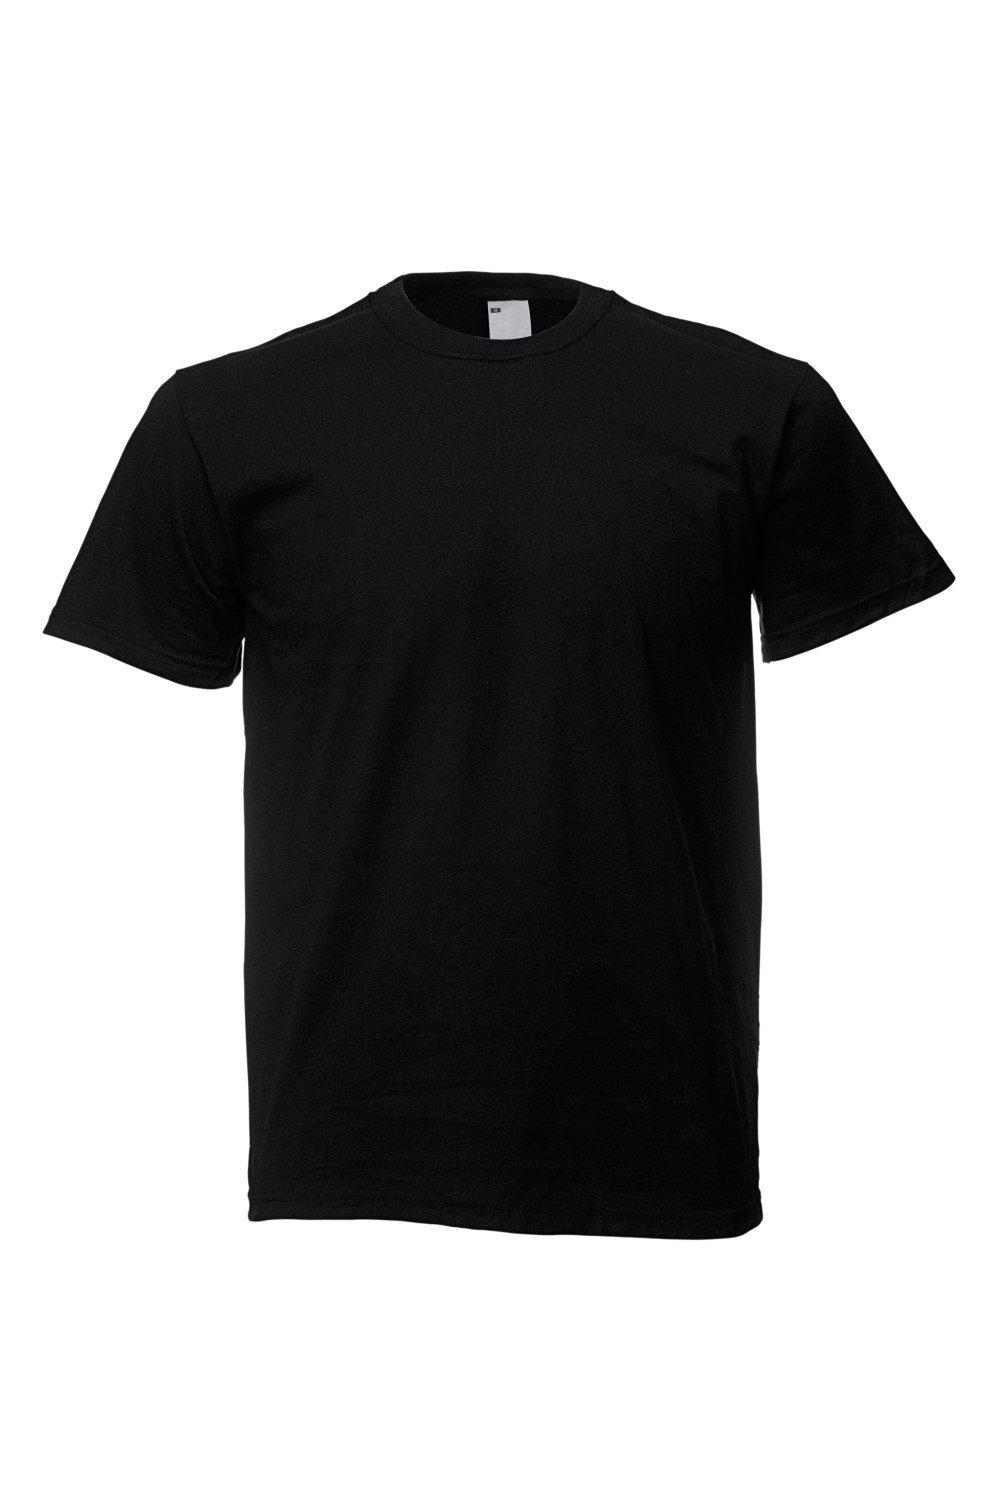 Повседневная футболка с коротким рукавом Universal Textiles, черный мужская футболка динозавр и мороз 2xl серый меланж